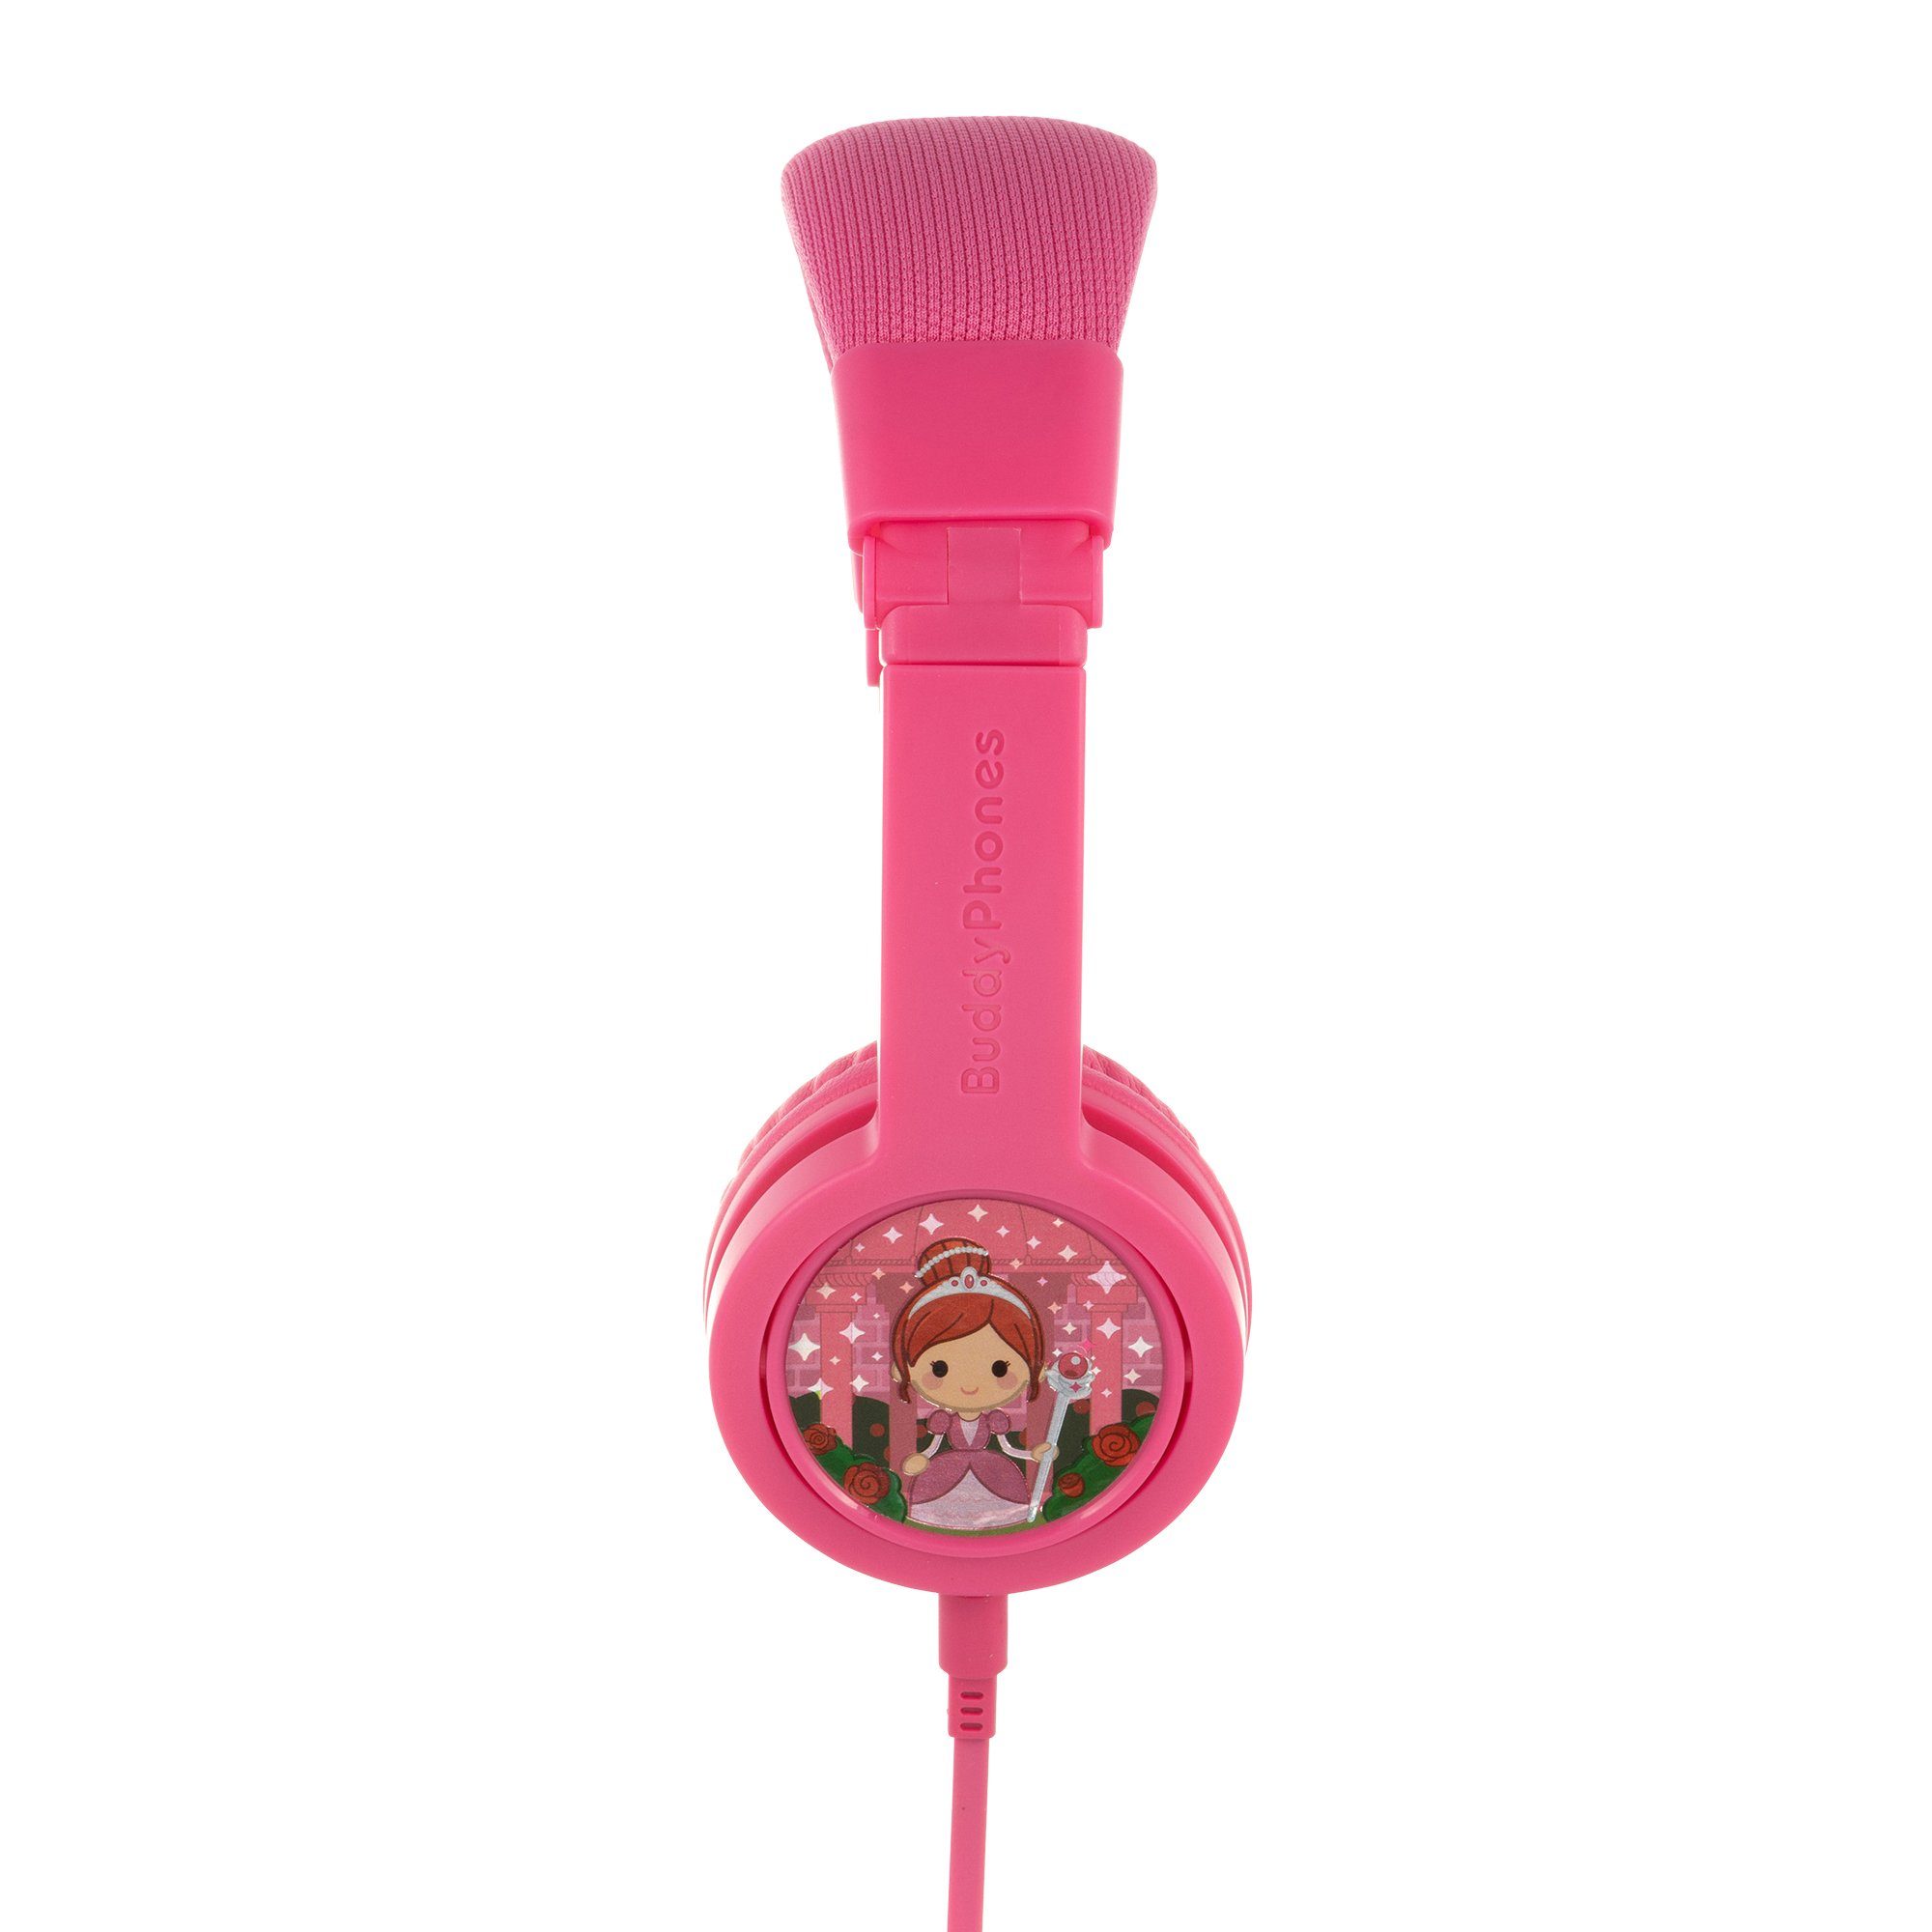 onanoff buddyphones™ Produkte BuddyPhones gepolsterter Kinder-Kopfhörer abnehmbar, sicheren pink strapazierfähig, Sticker integriertes verstellbarer inkl. Reisetasche, Kabel kinderfreundlich, Mikrofon, Kopfbügel, hypoallergen) Explore+ extrem Kopfbügel, safeAudio, (kindersicher, die Lautstärkebegrenzung, klappbar, - coole Kinderkopfhörer dabei